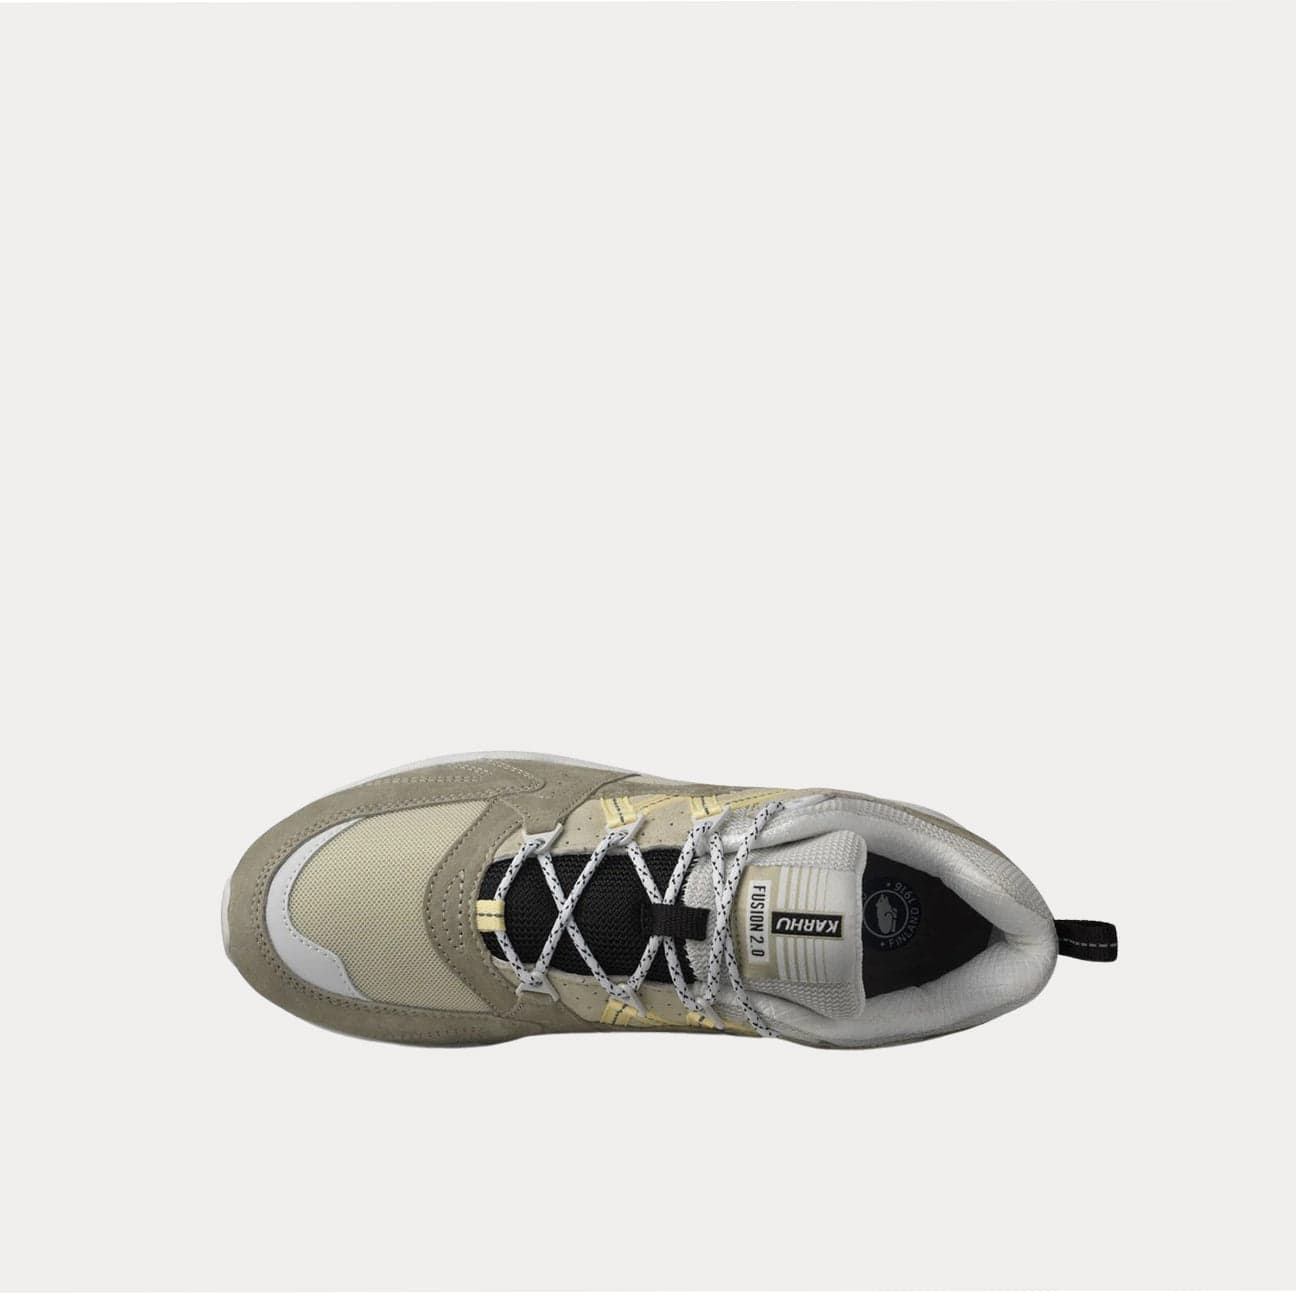 KARHU Sneakers Fusion 2.0 Beige e Giallo